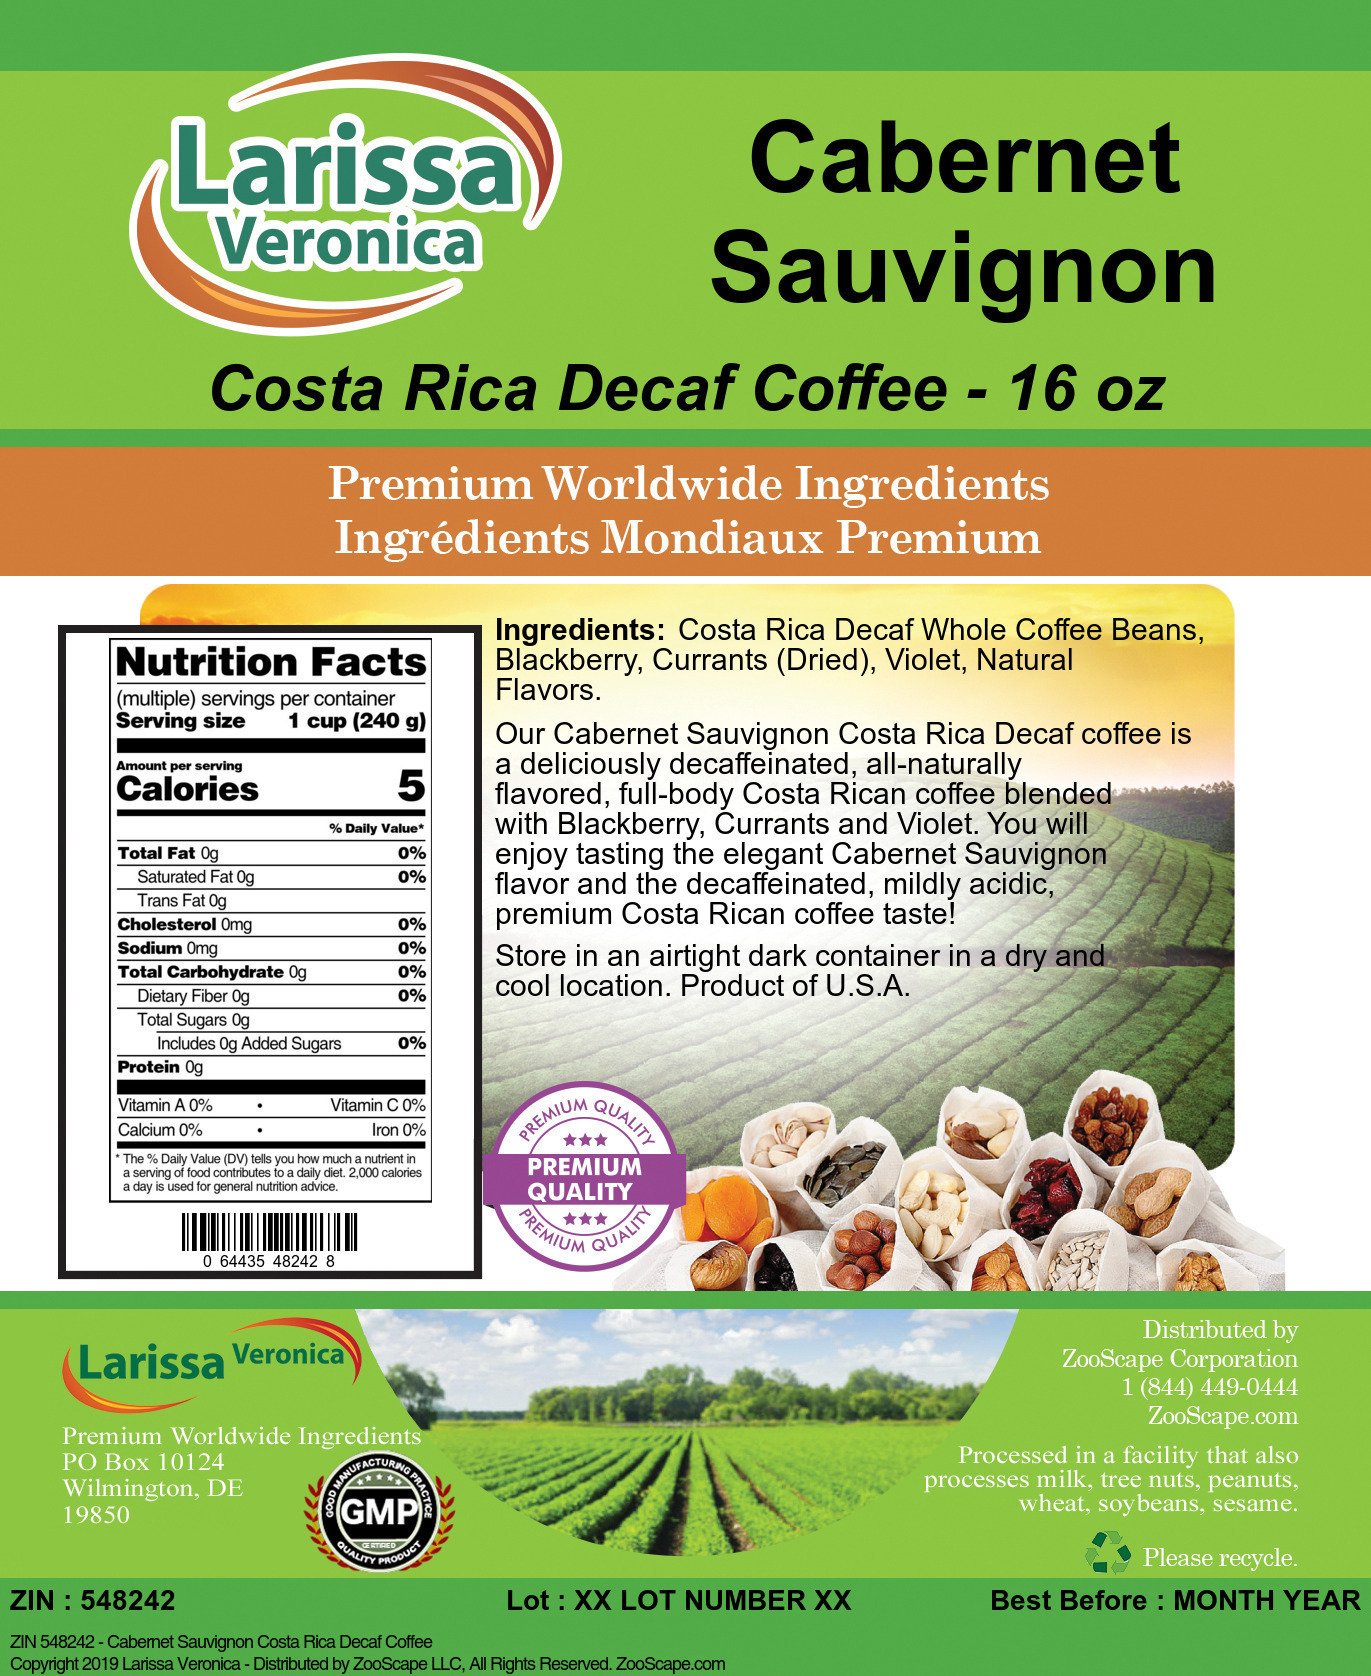 Cabernet Sauvignon Costa Rica Decaf Coffee - Label